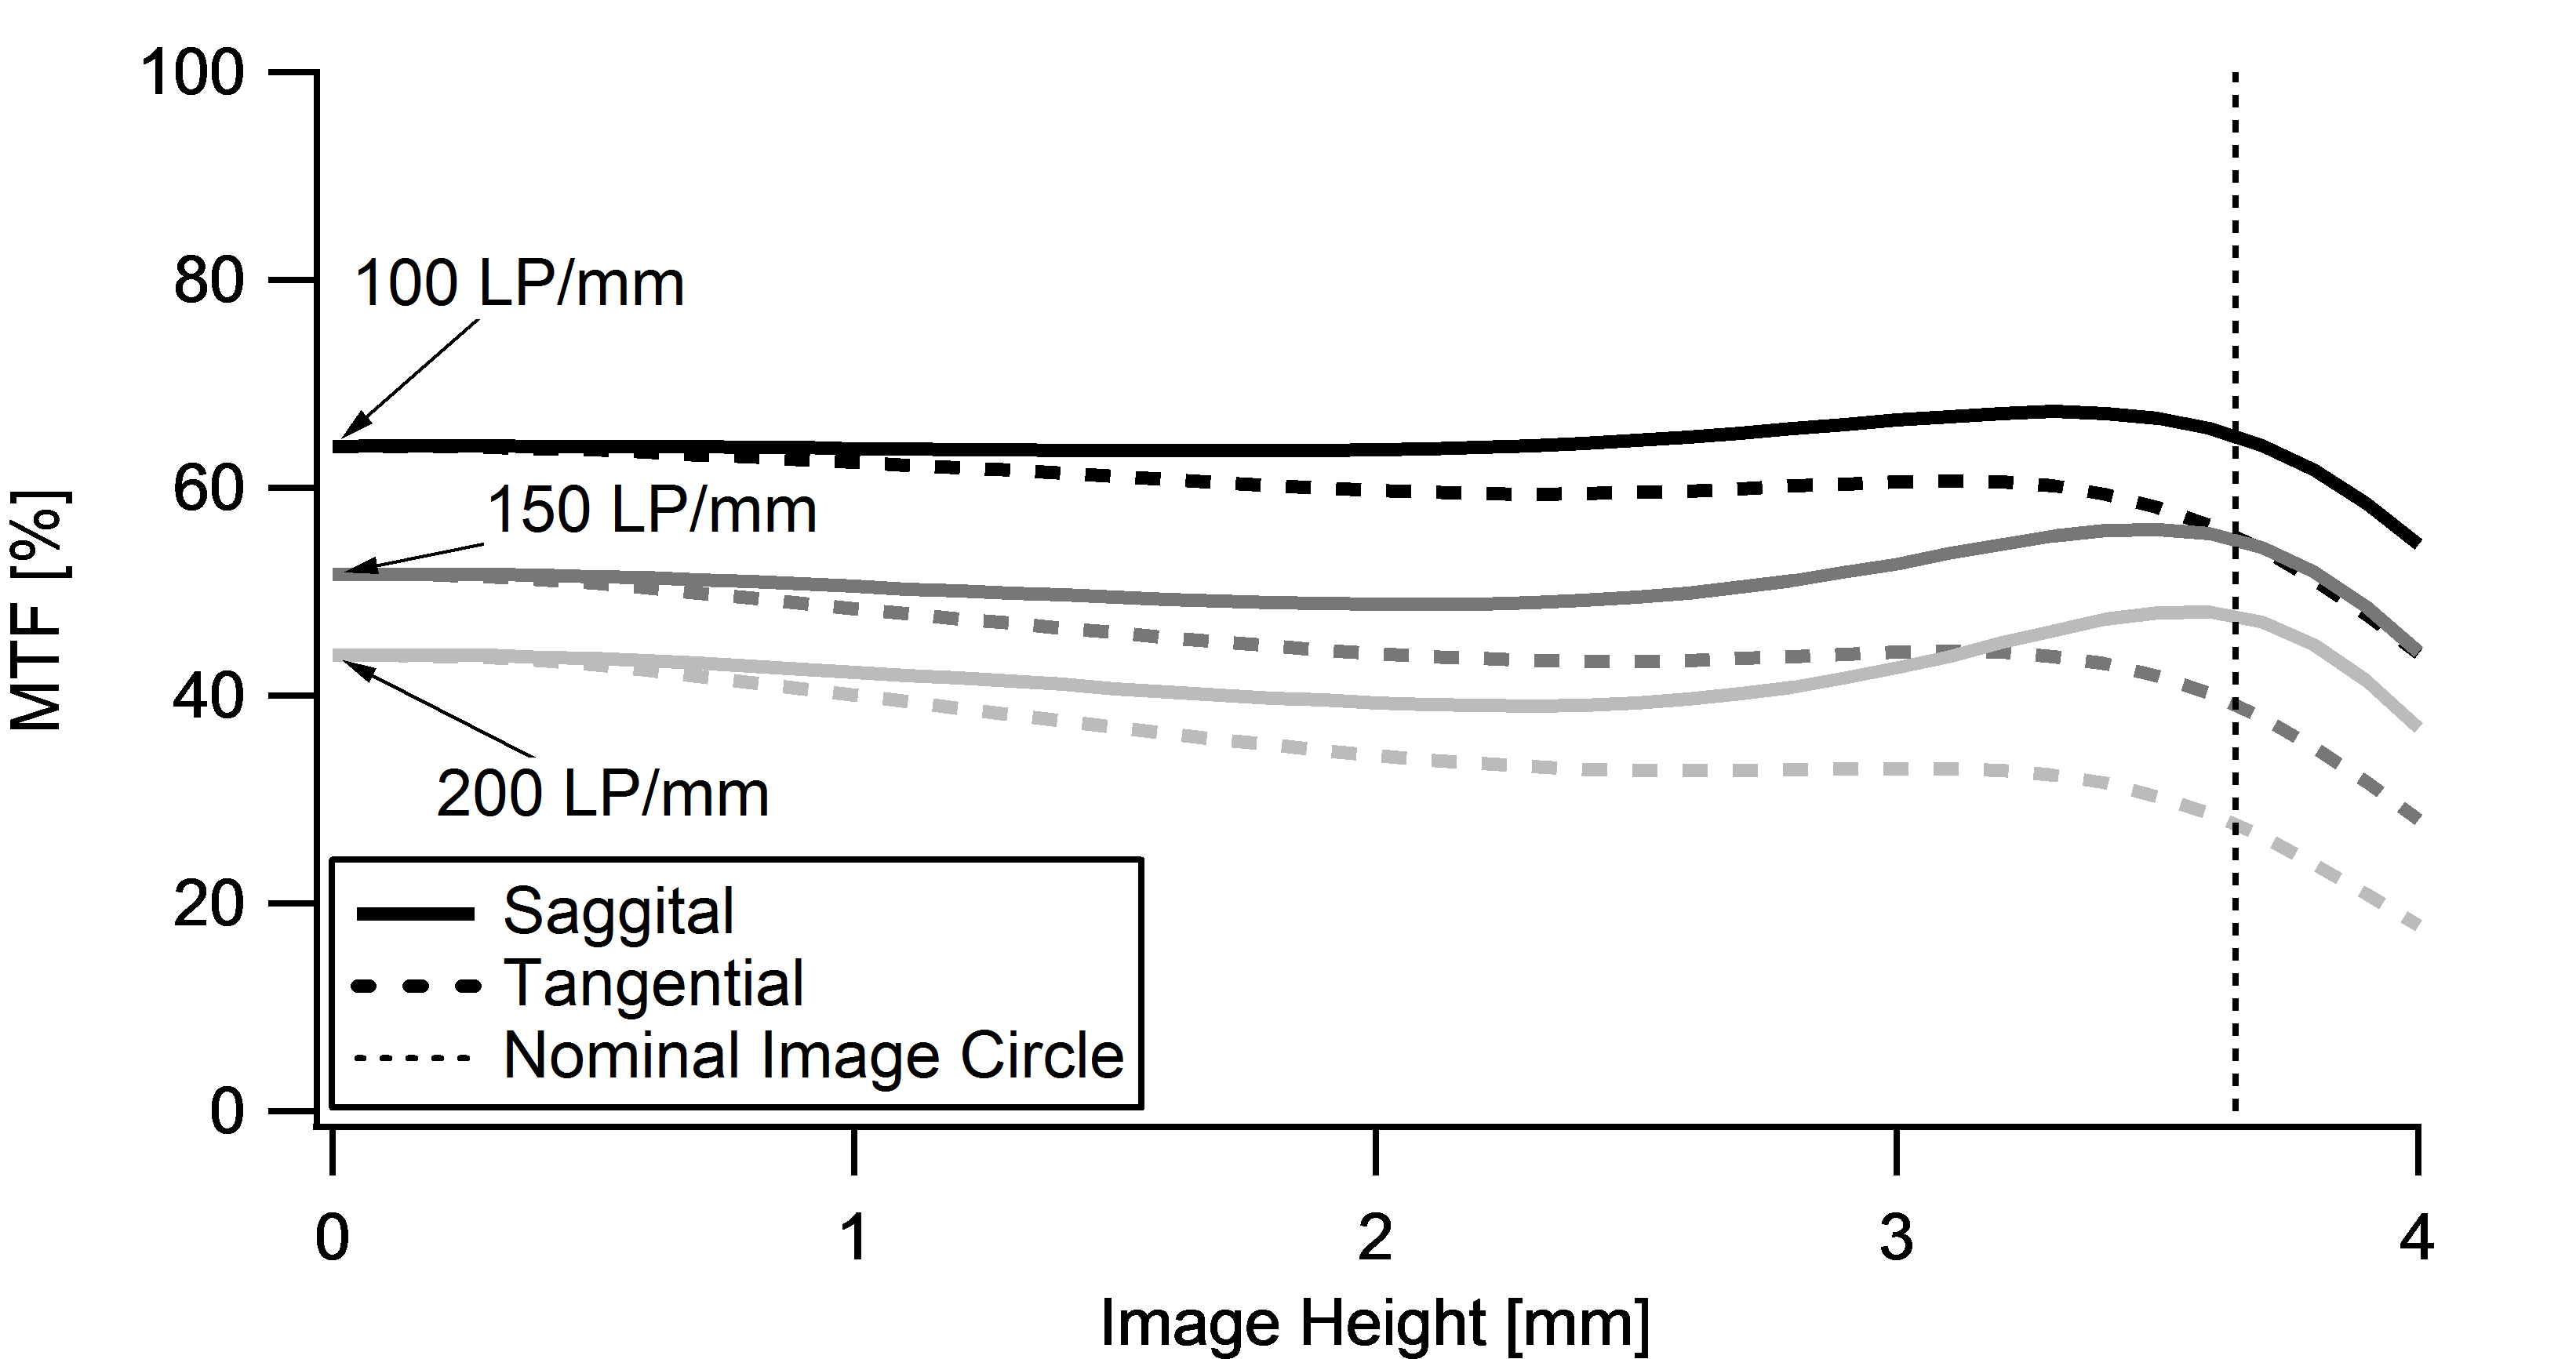 Resolution versus Image Height